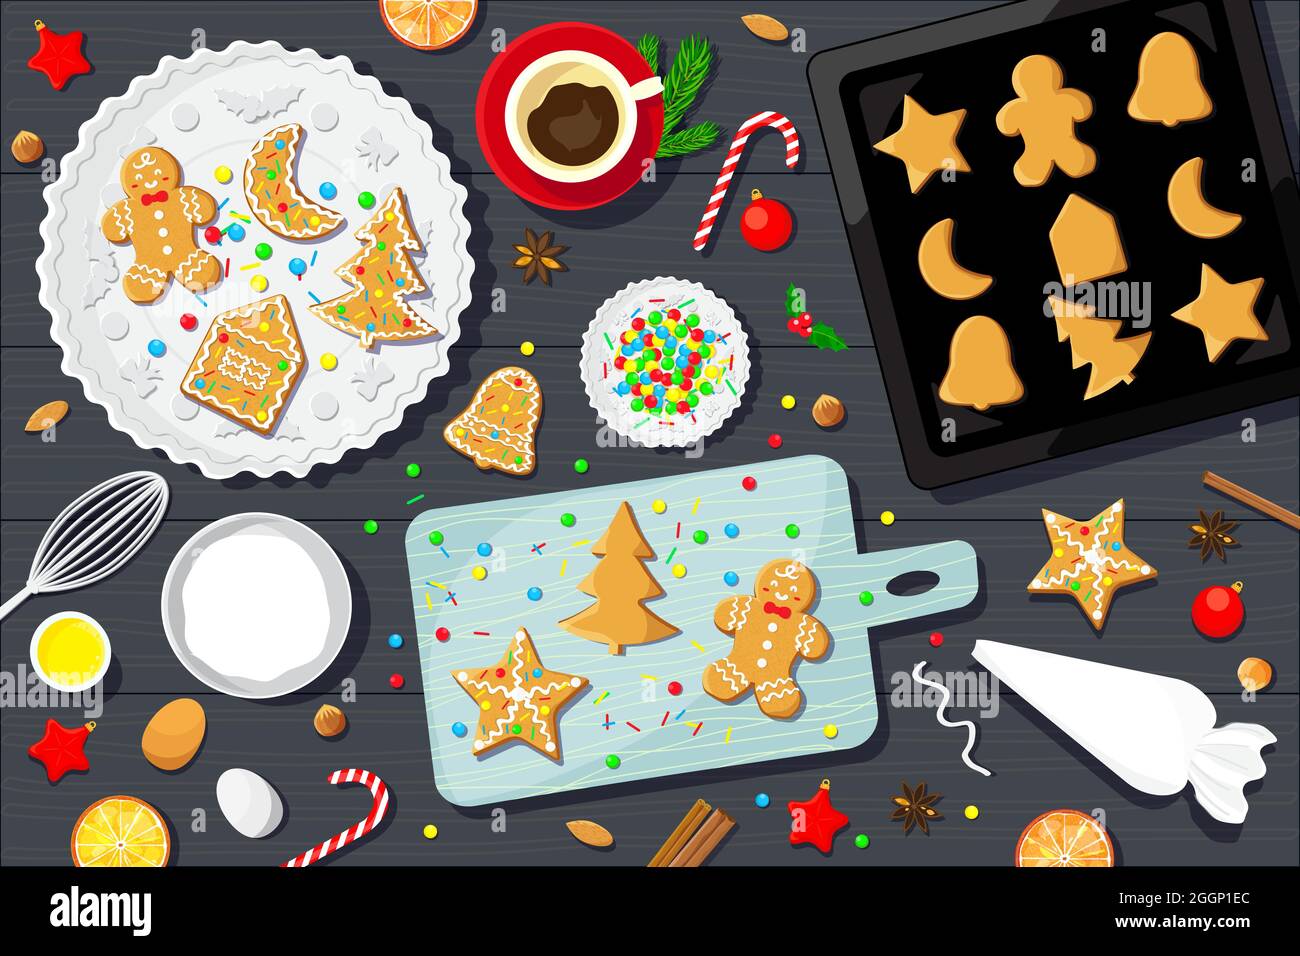 Dekorieren von Weihnachts-Lebkuchengebäck mit Glasur, Süßigkeiten und Streuseln. Hintergrund der Vektorgrafik. Stock Vektor